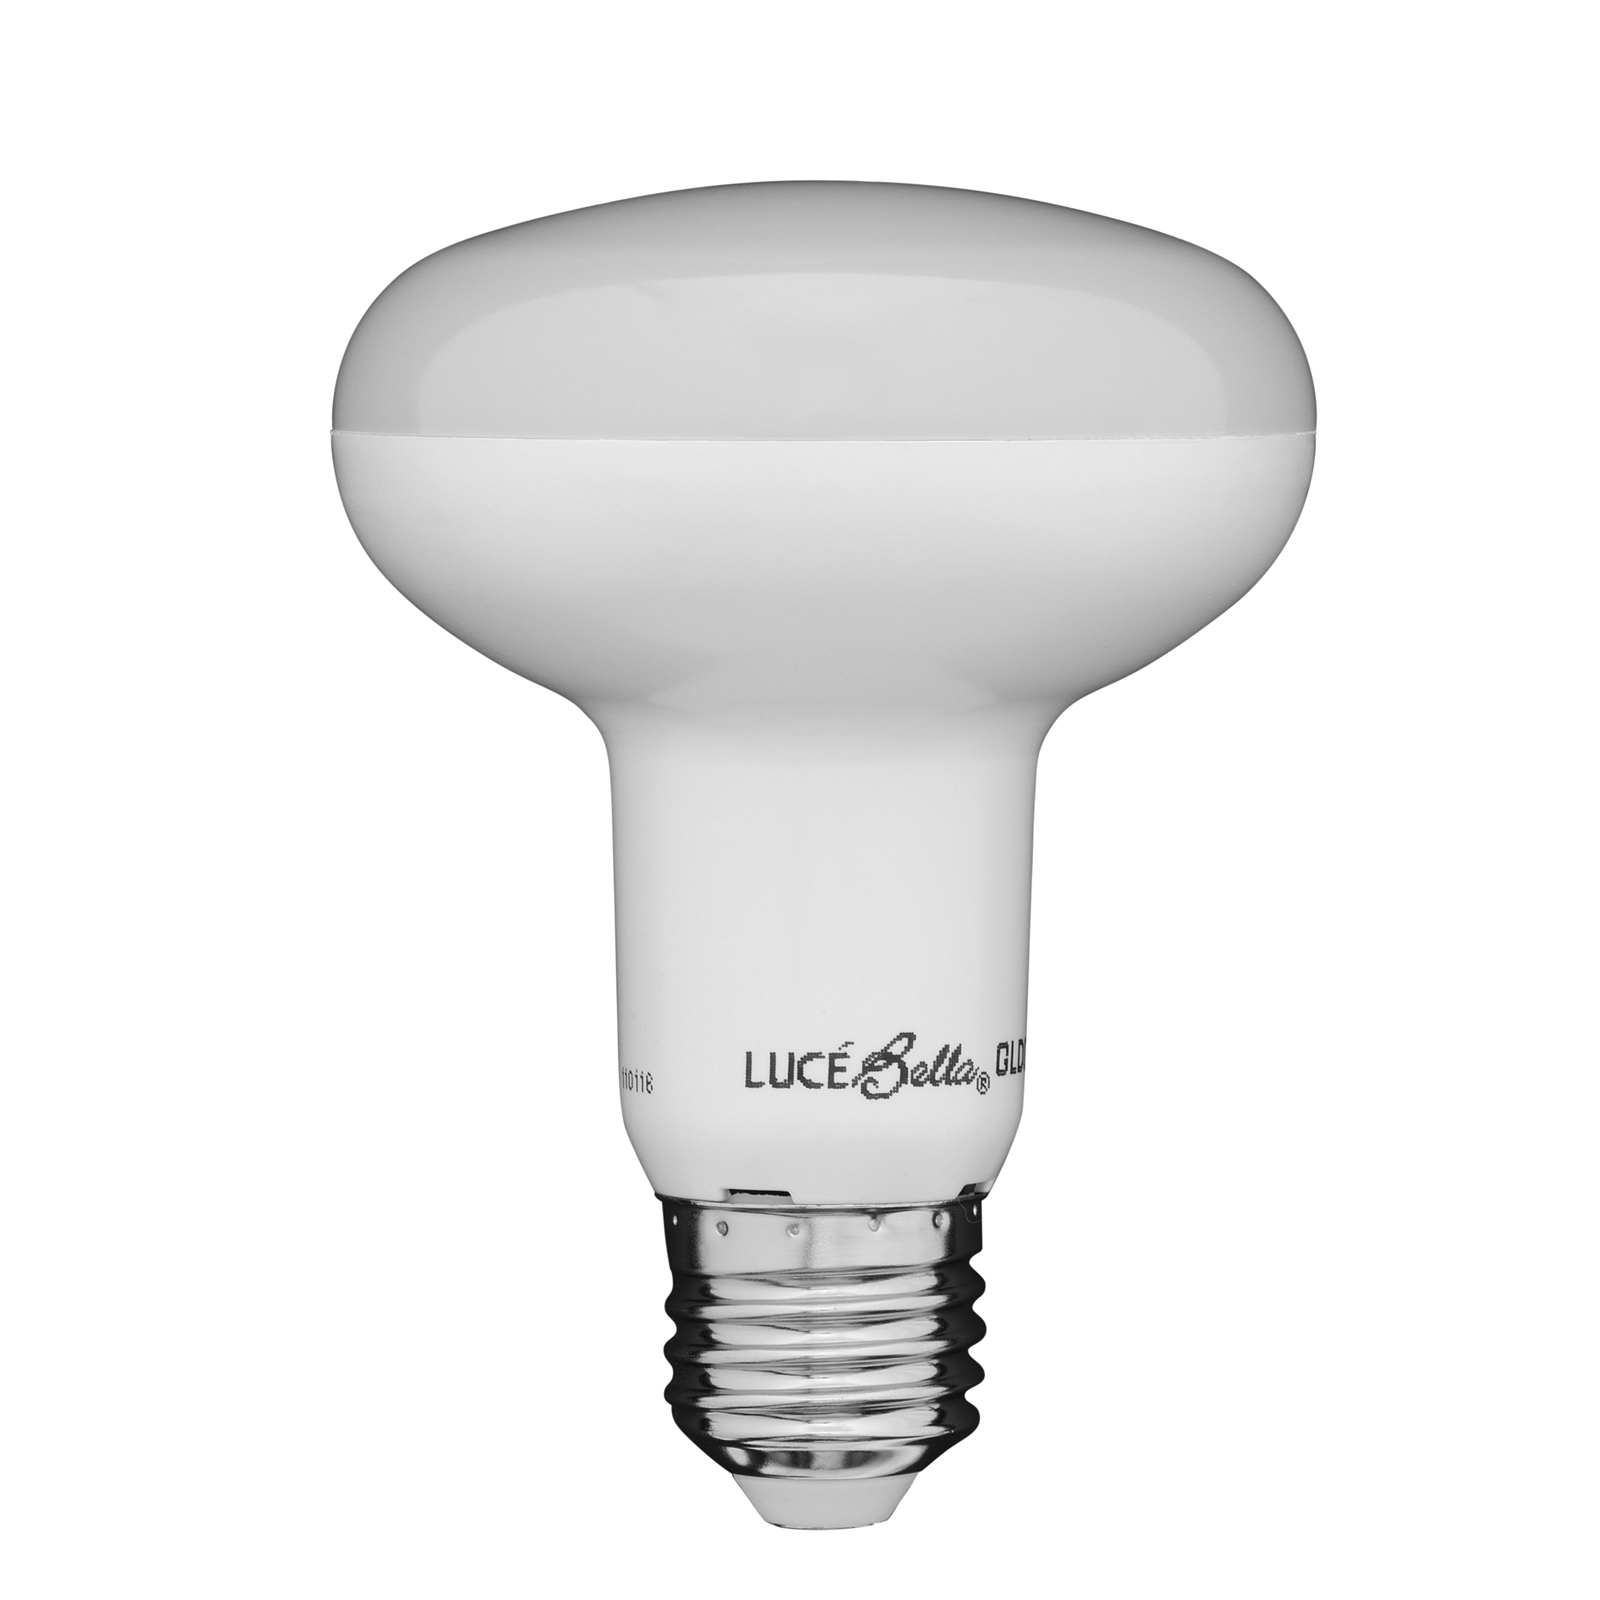 Luce Bella 10W 800lm ES R80 LED Globe Warm White